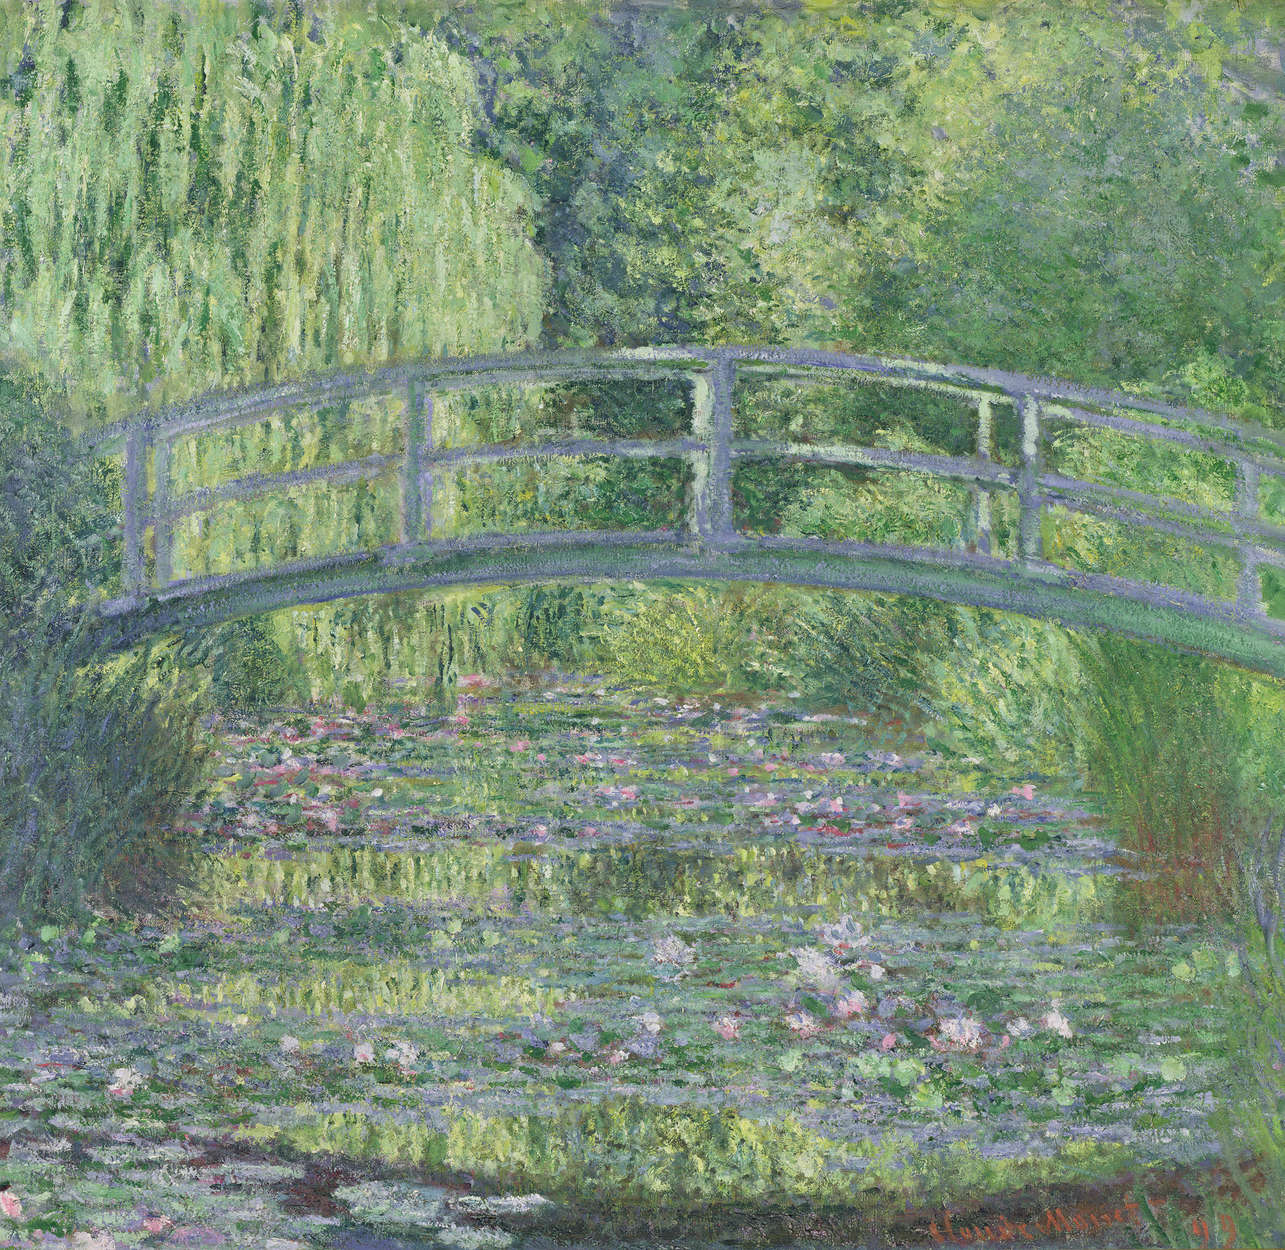             Waterlelie vijver: groene harmonie" muurschildering van Claude Monet
        